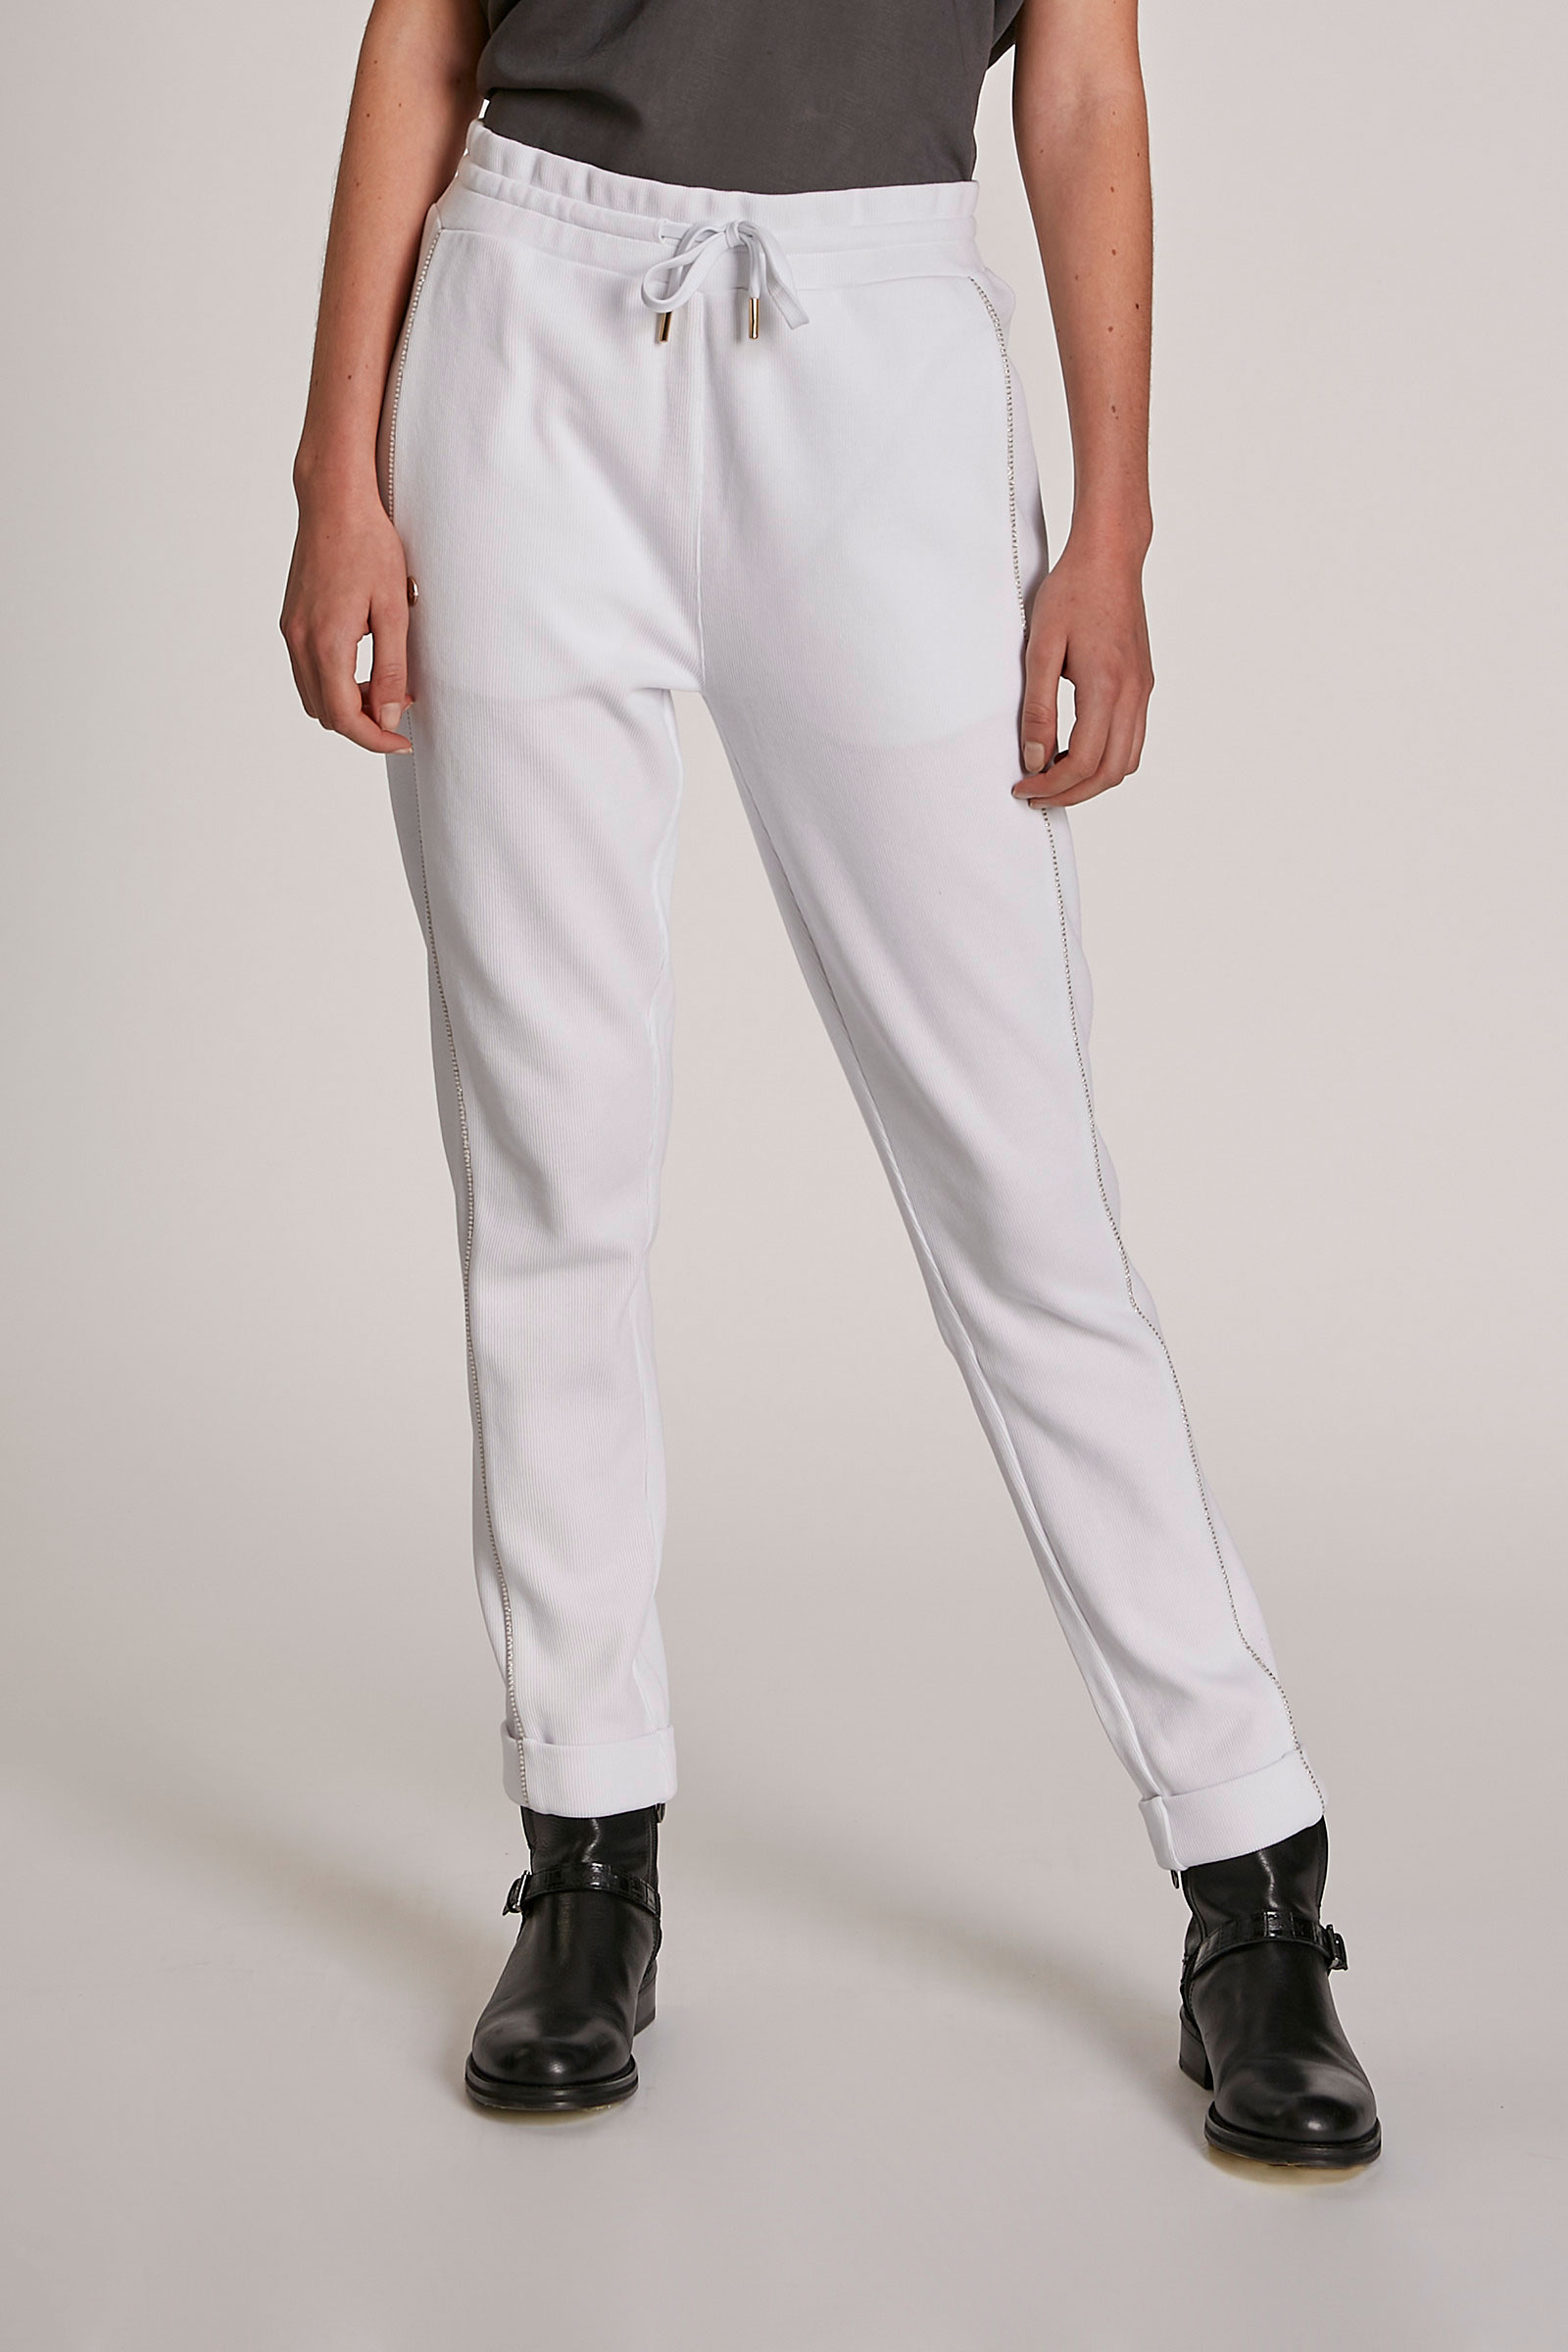 Pantalón de mujer de algodón, corte regular Blanco Óptico La